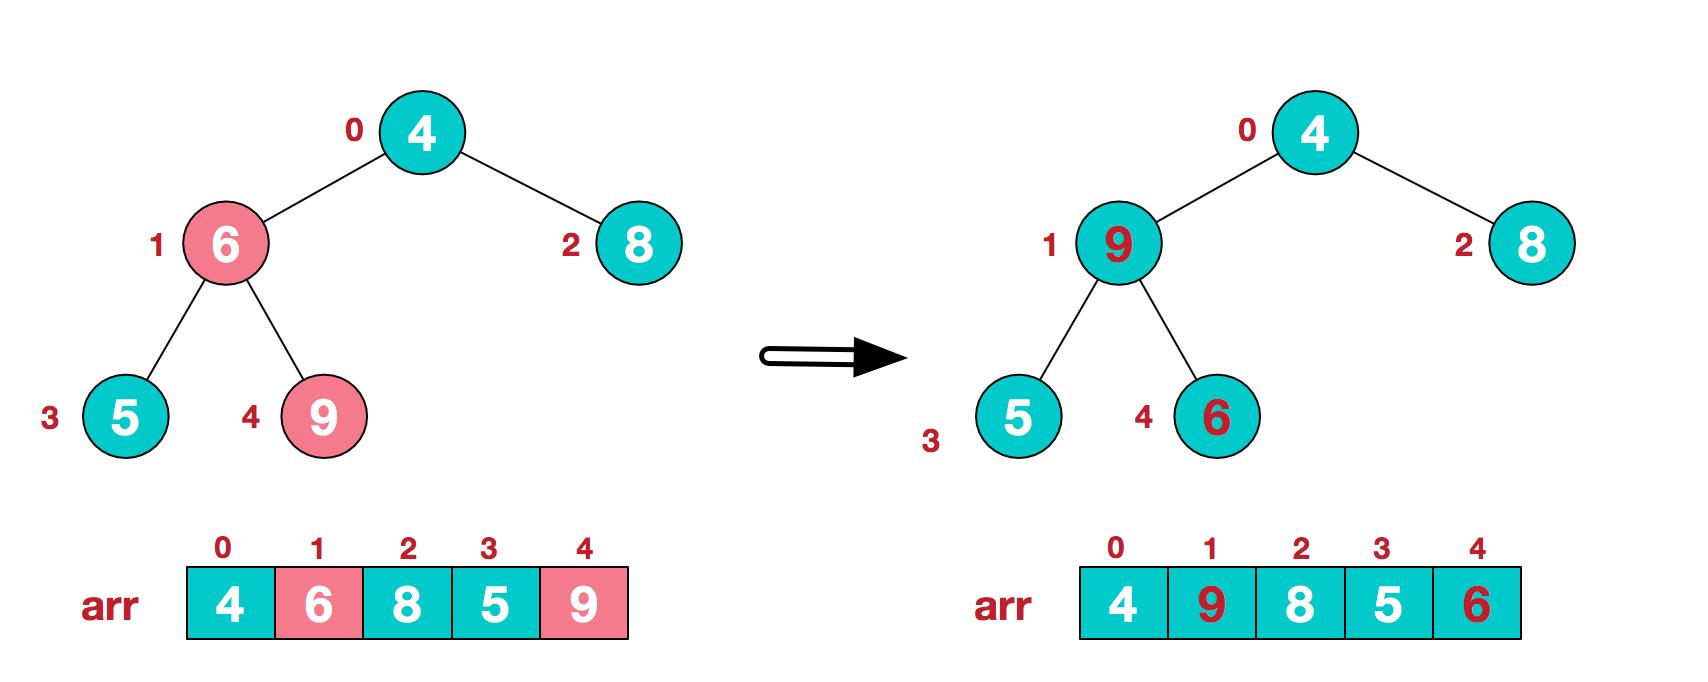 图解排序算法(三)之堆排序 - 文章图片